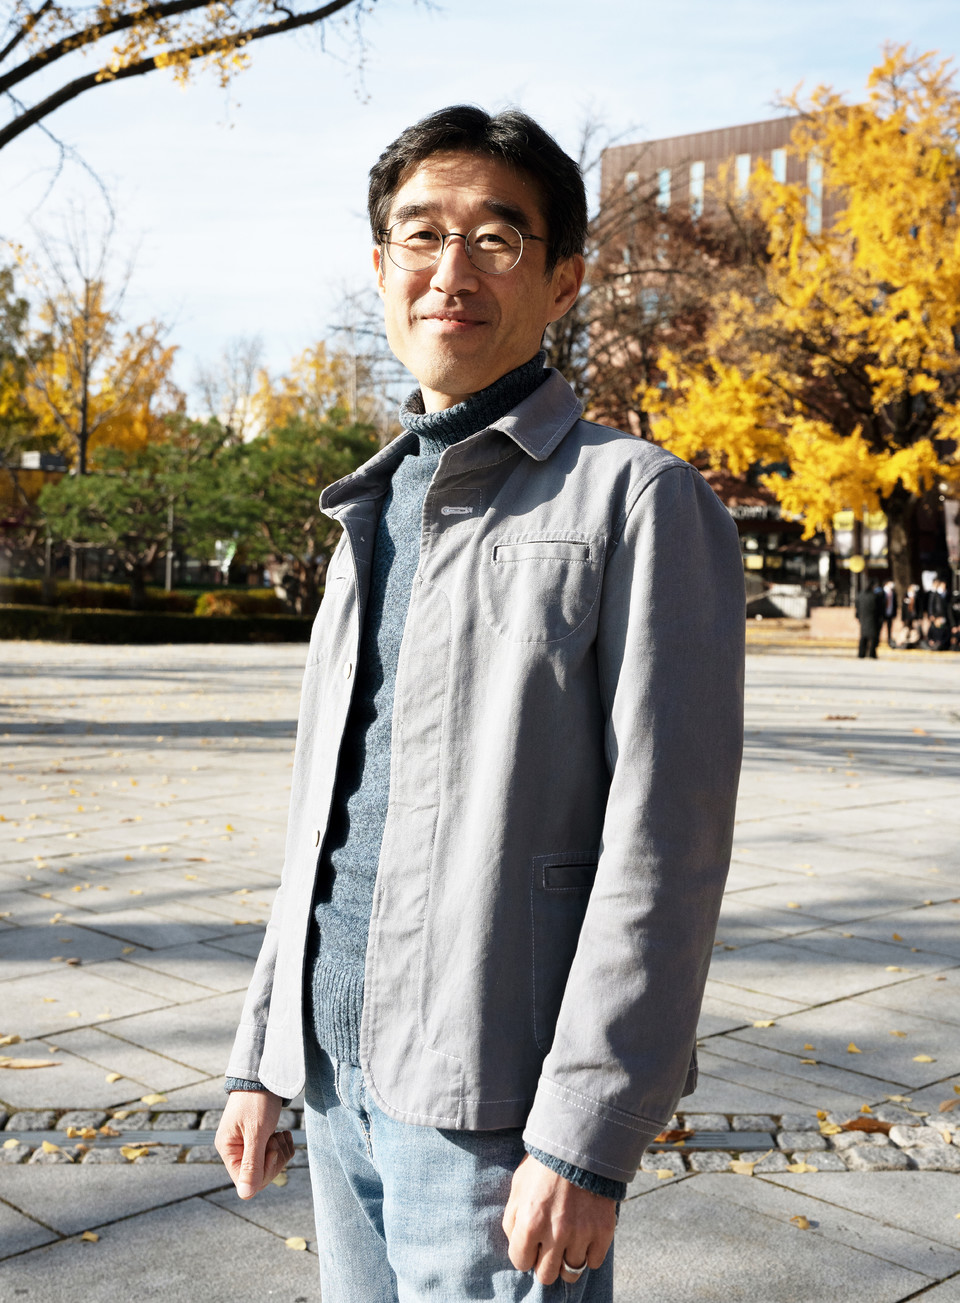 11월 14일, 노들야학 인근 마로니에공원에서 김도현 활동가. 사진 현다혜